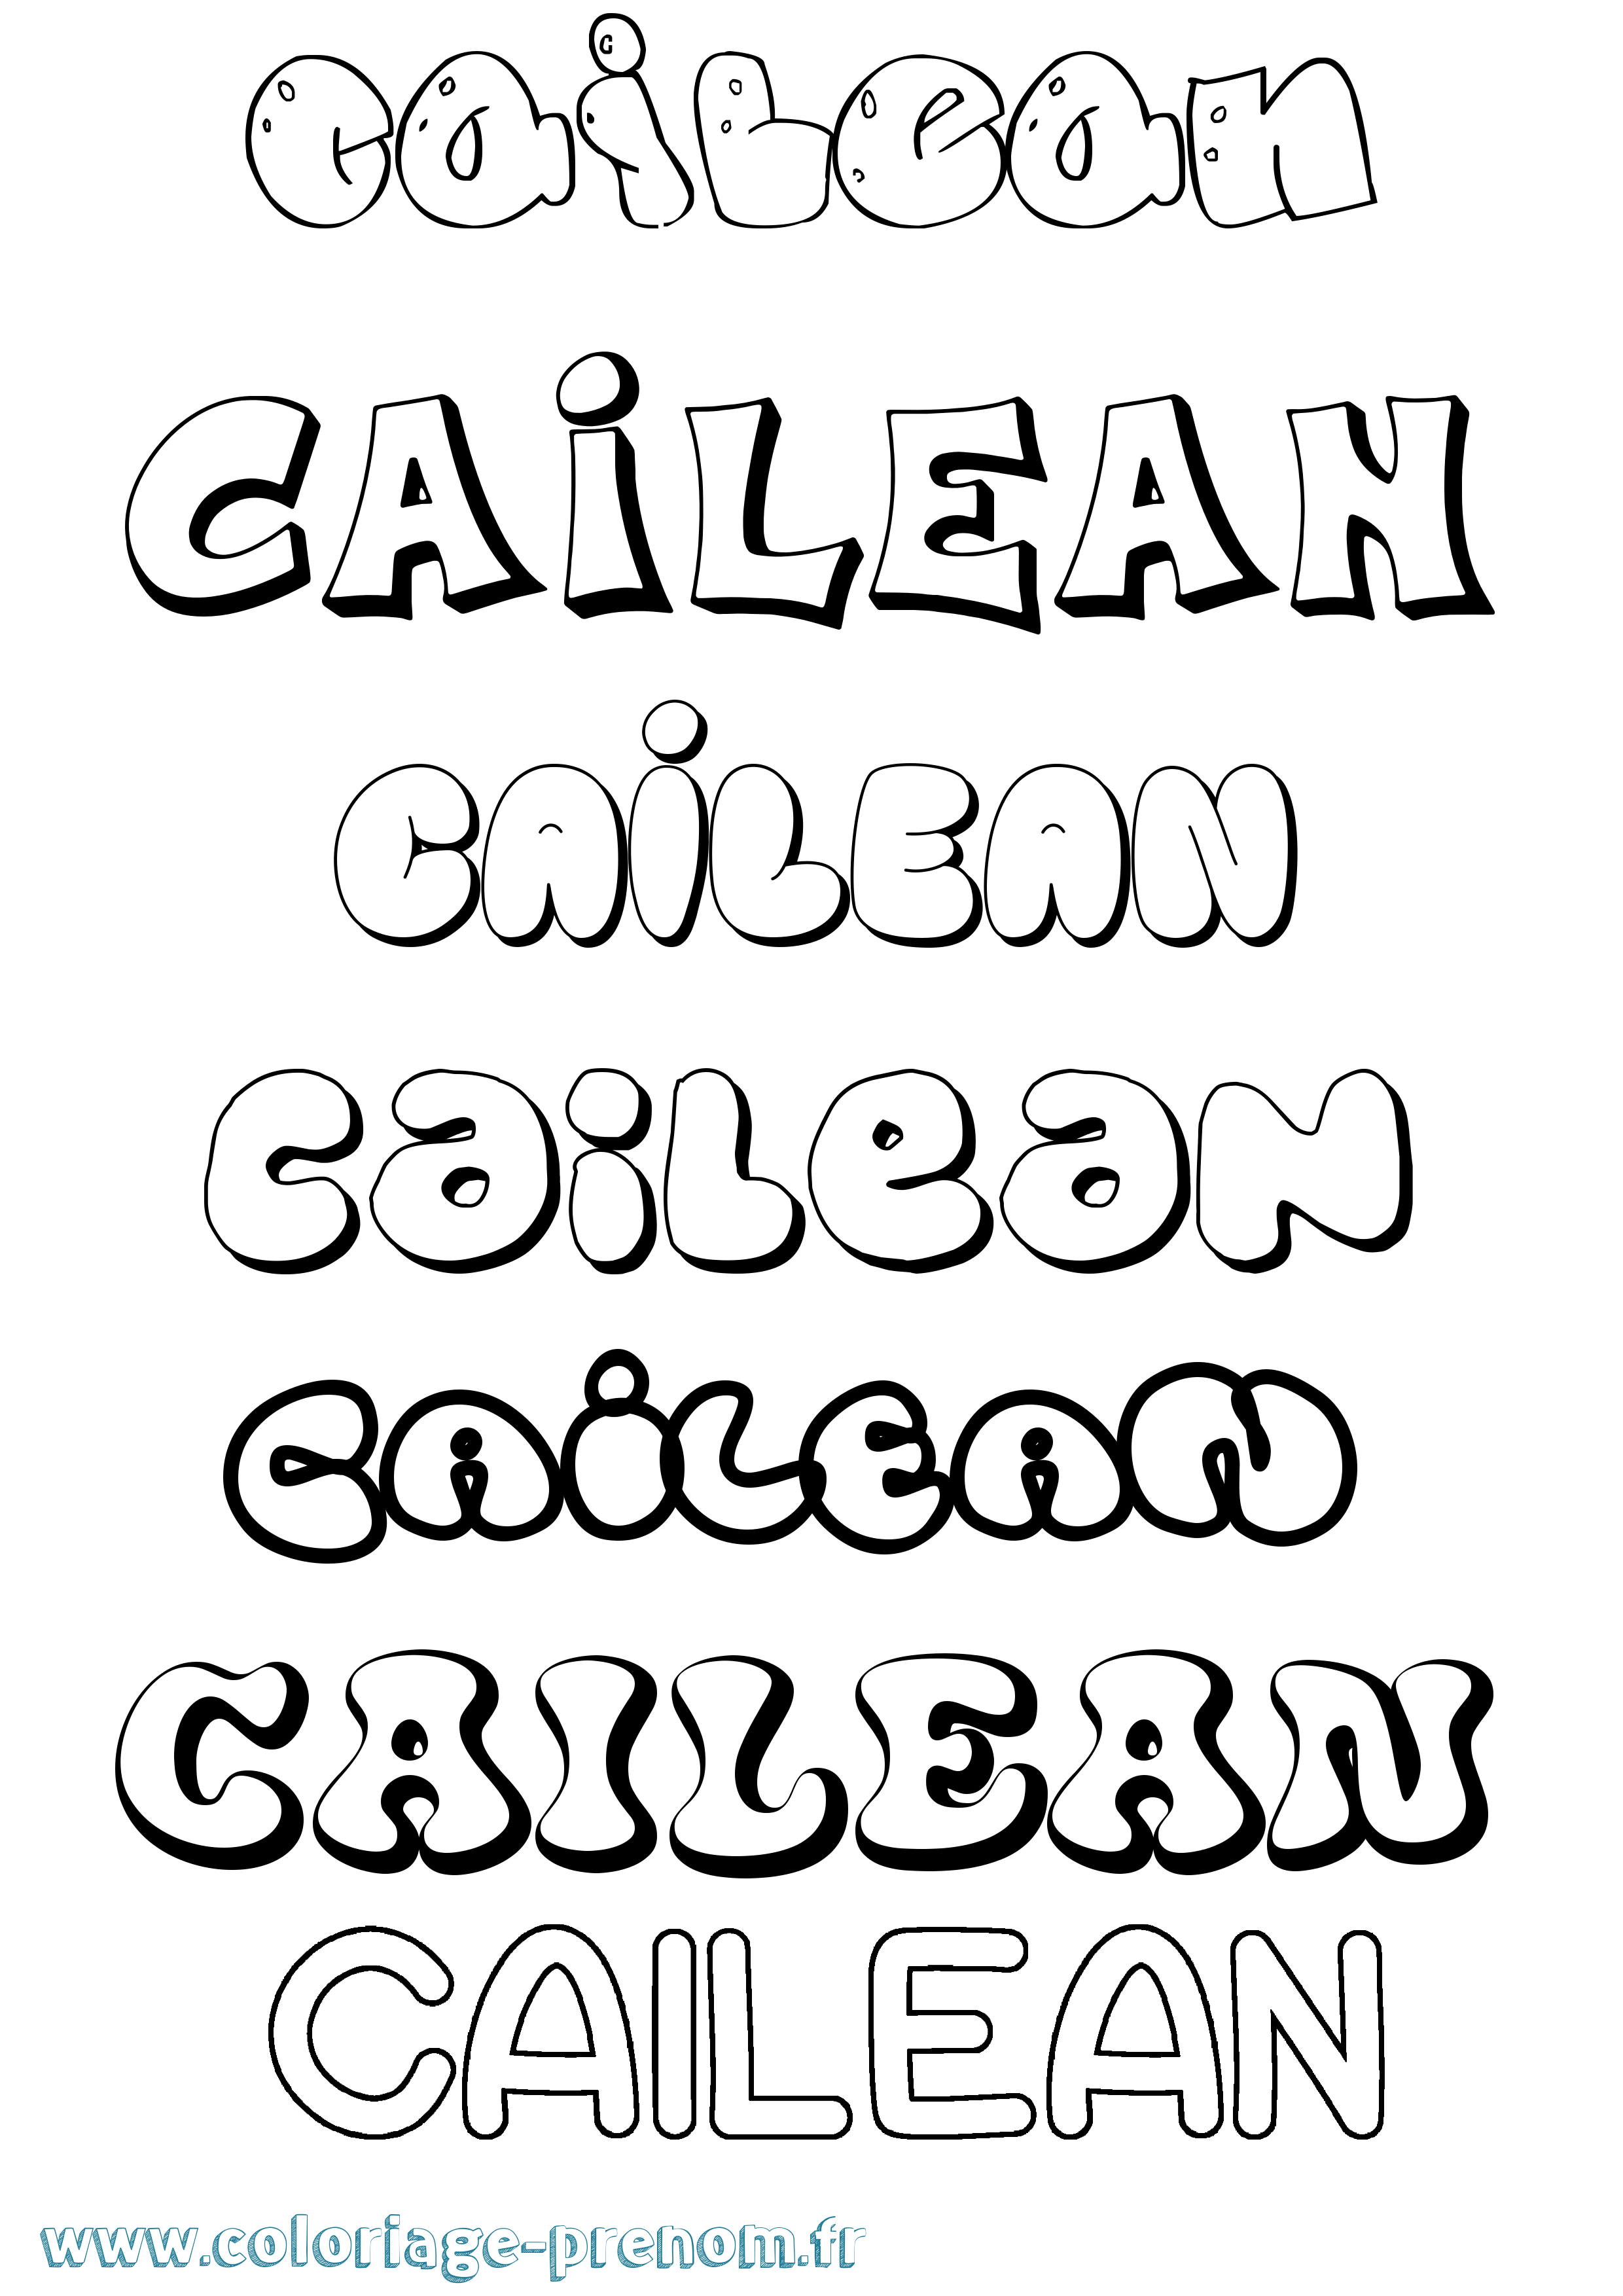 Coloriage prénom Cailean Bubble